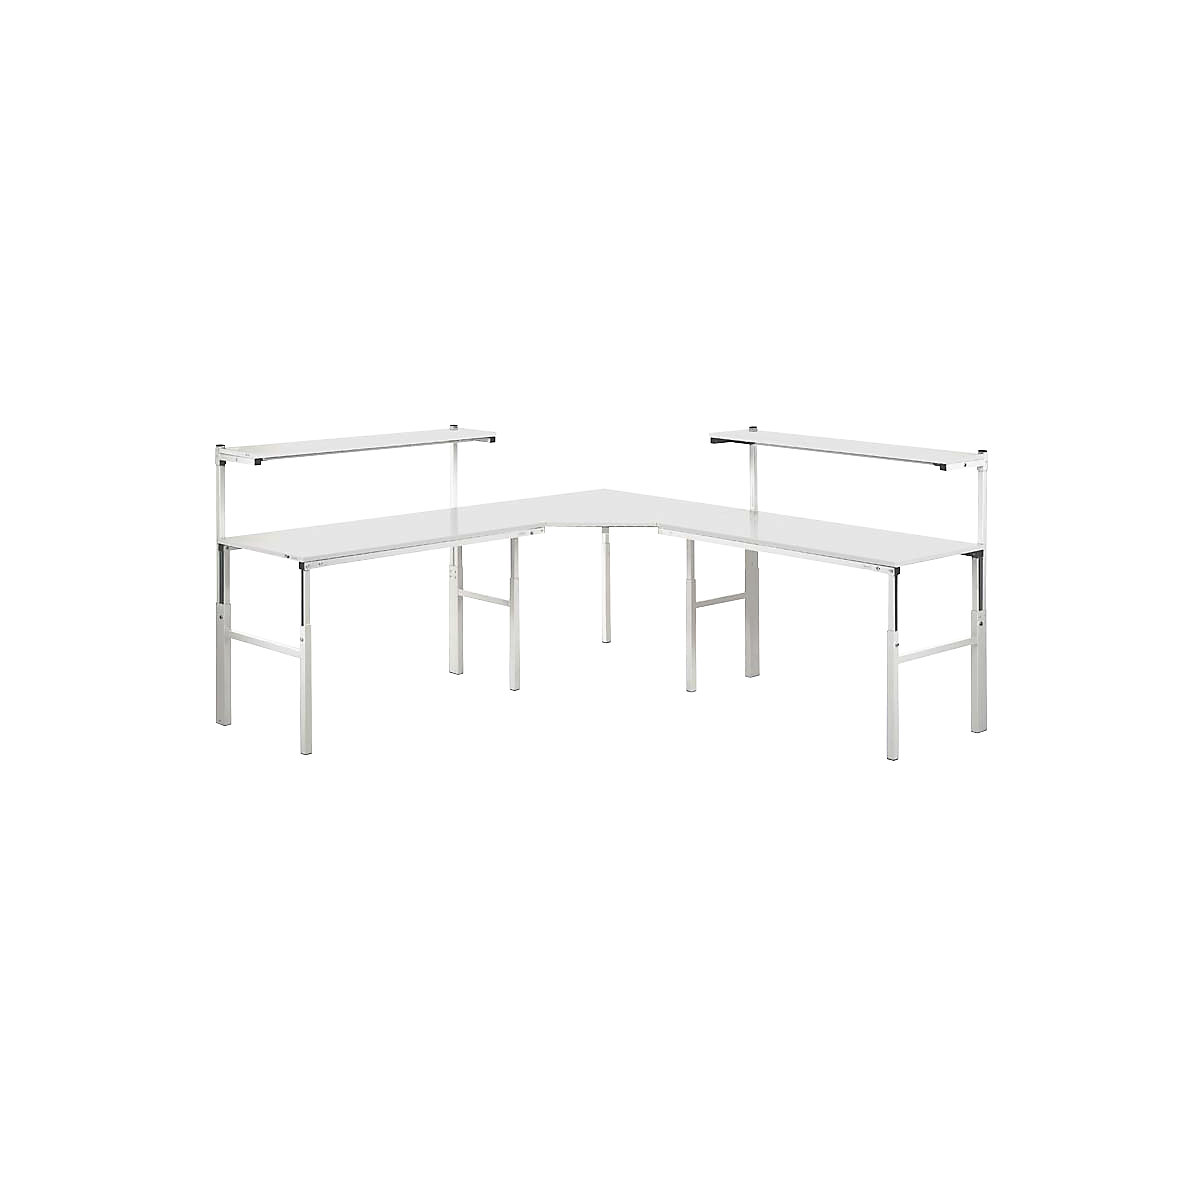 Treston – Pracovní stůl s ručním přestavováním výšky v rozsahu 650 až 900 mm, propojení 90°, pro 2 základní stoly s etážovou policí, hloubka 900 mm